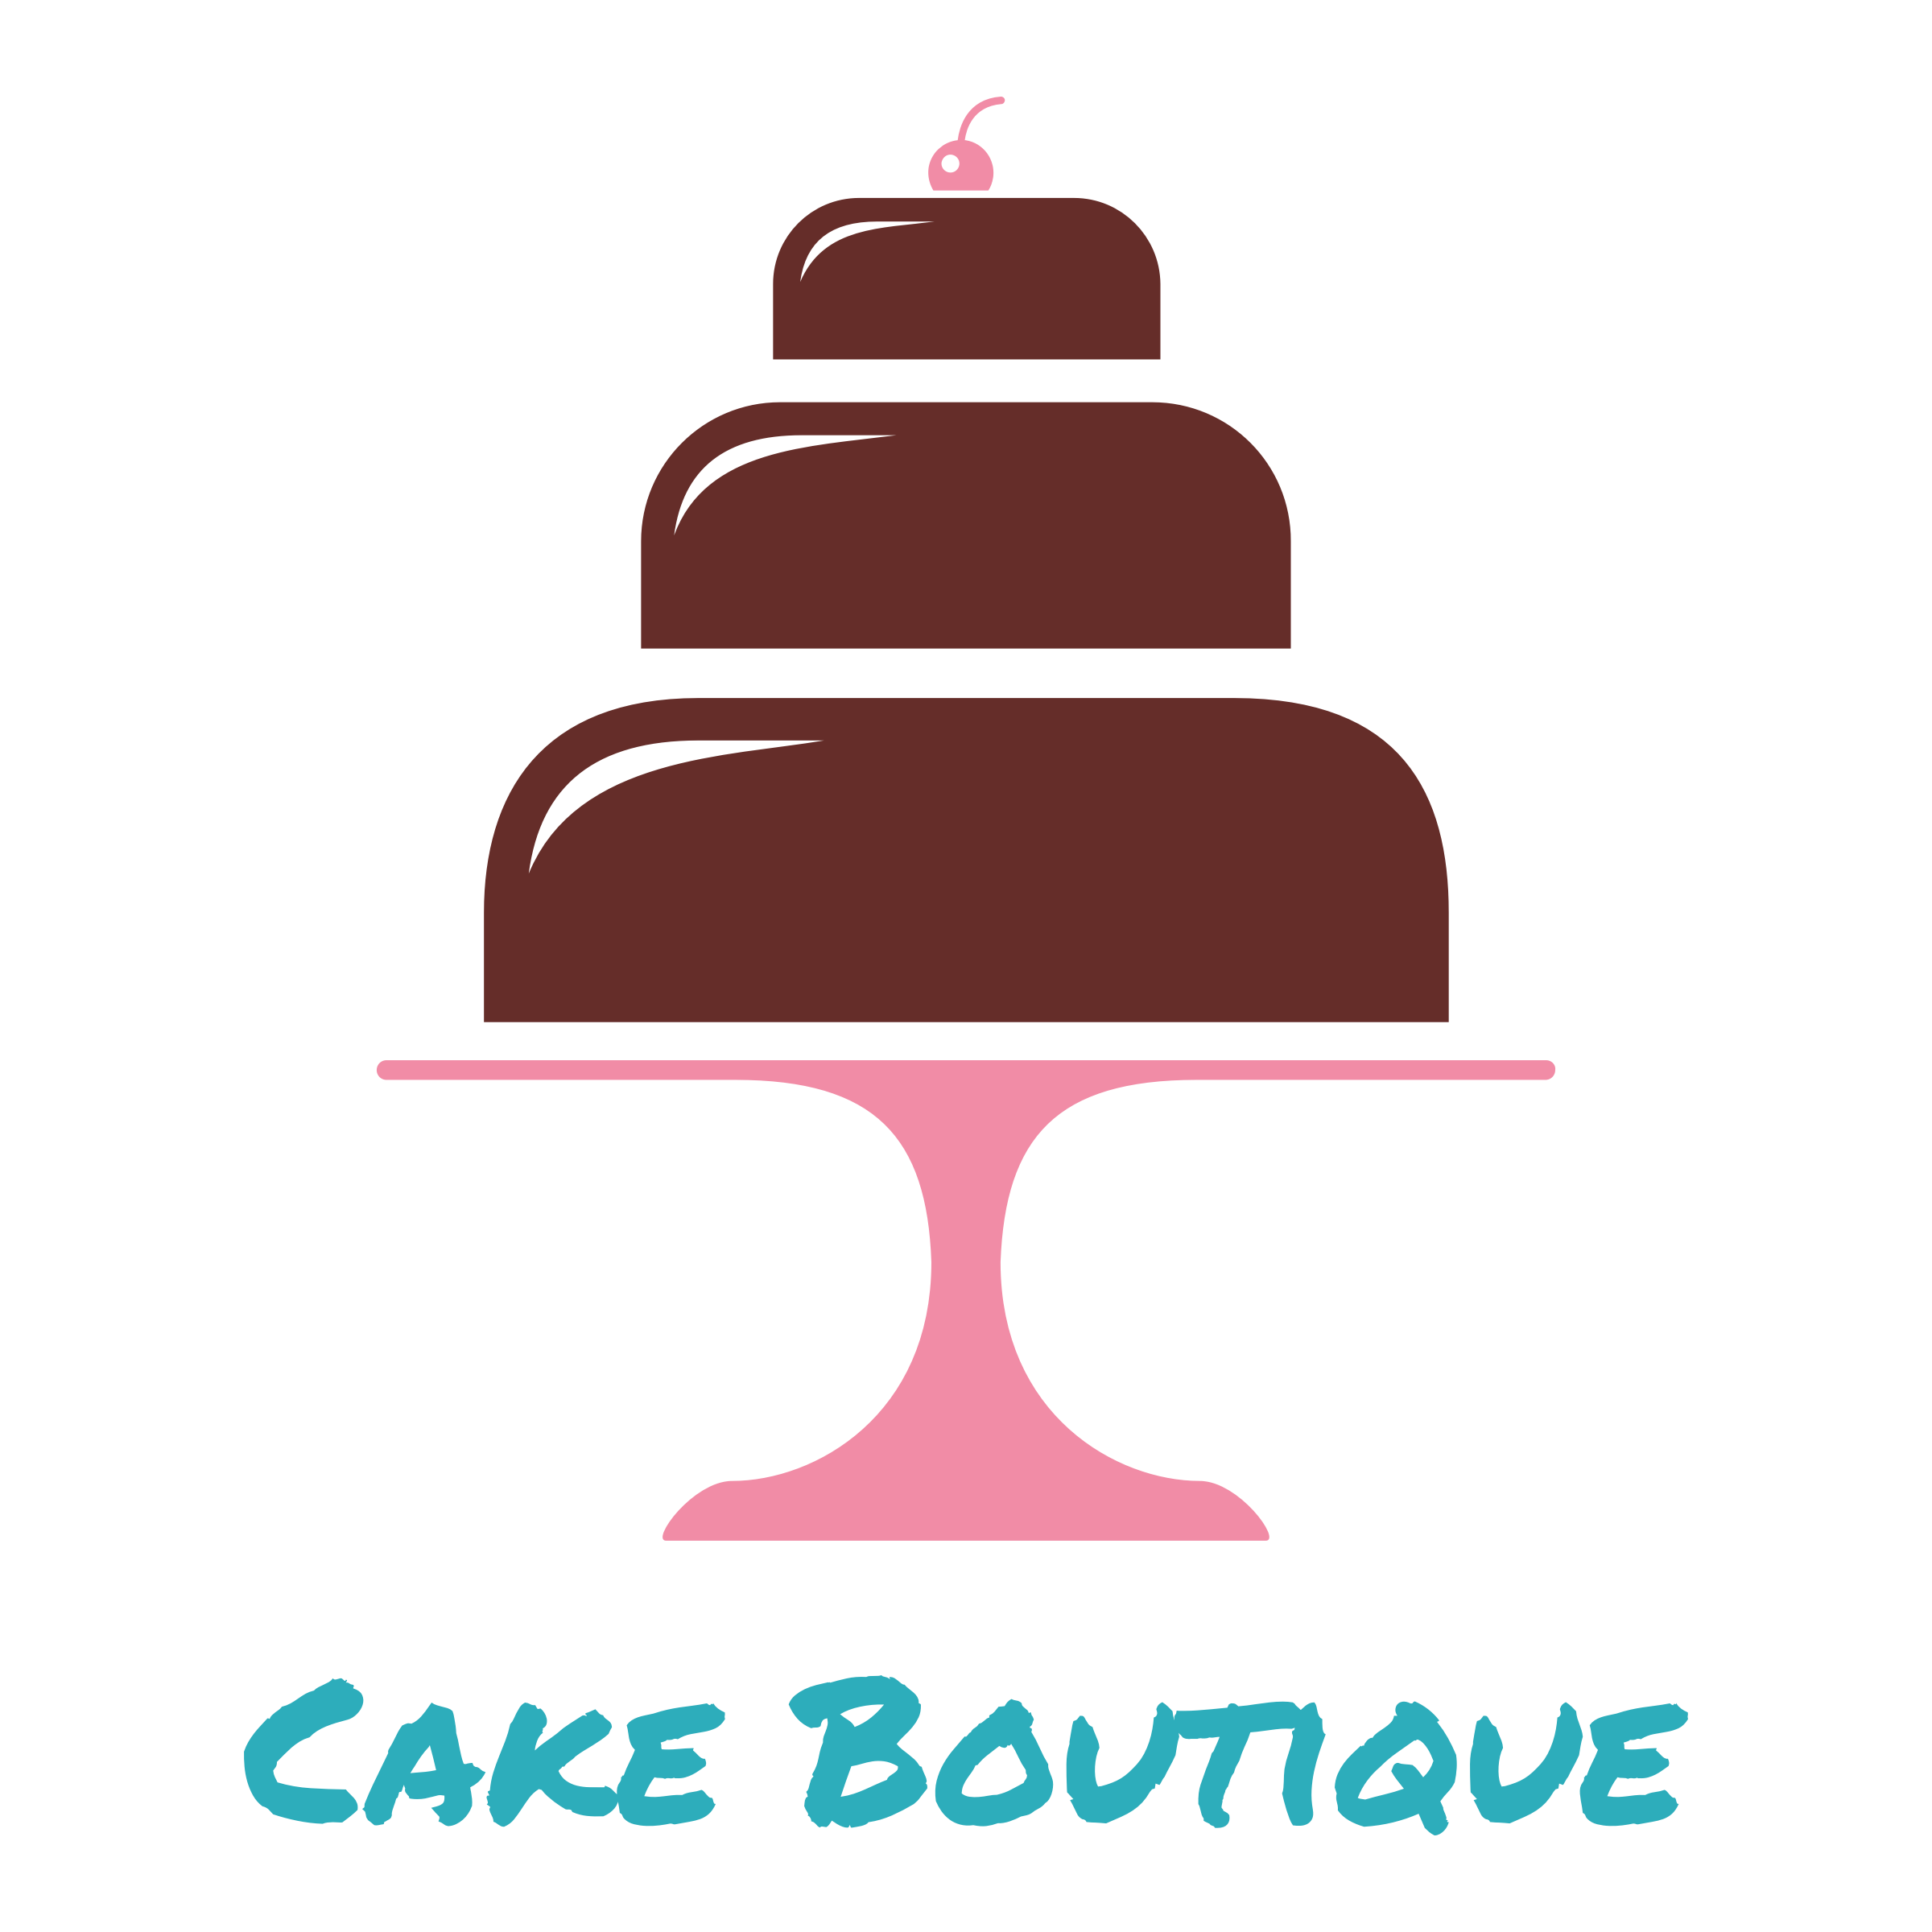 Cake & Bakery Logos | Design your own cake & bakery logo - 48hourslogo